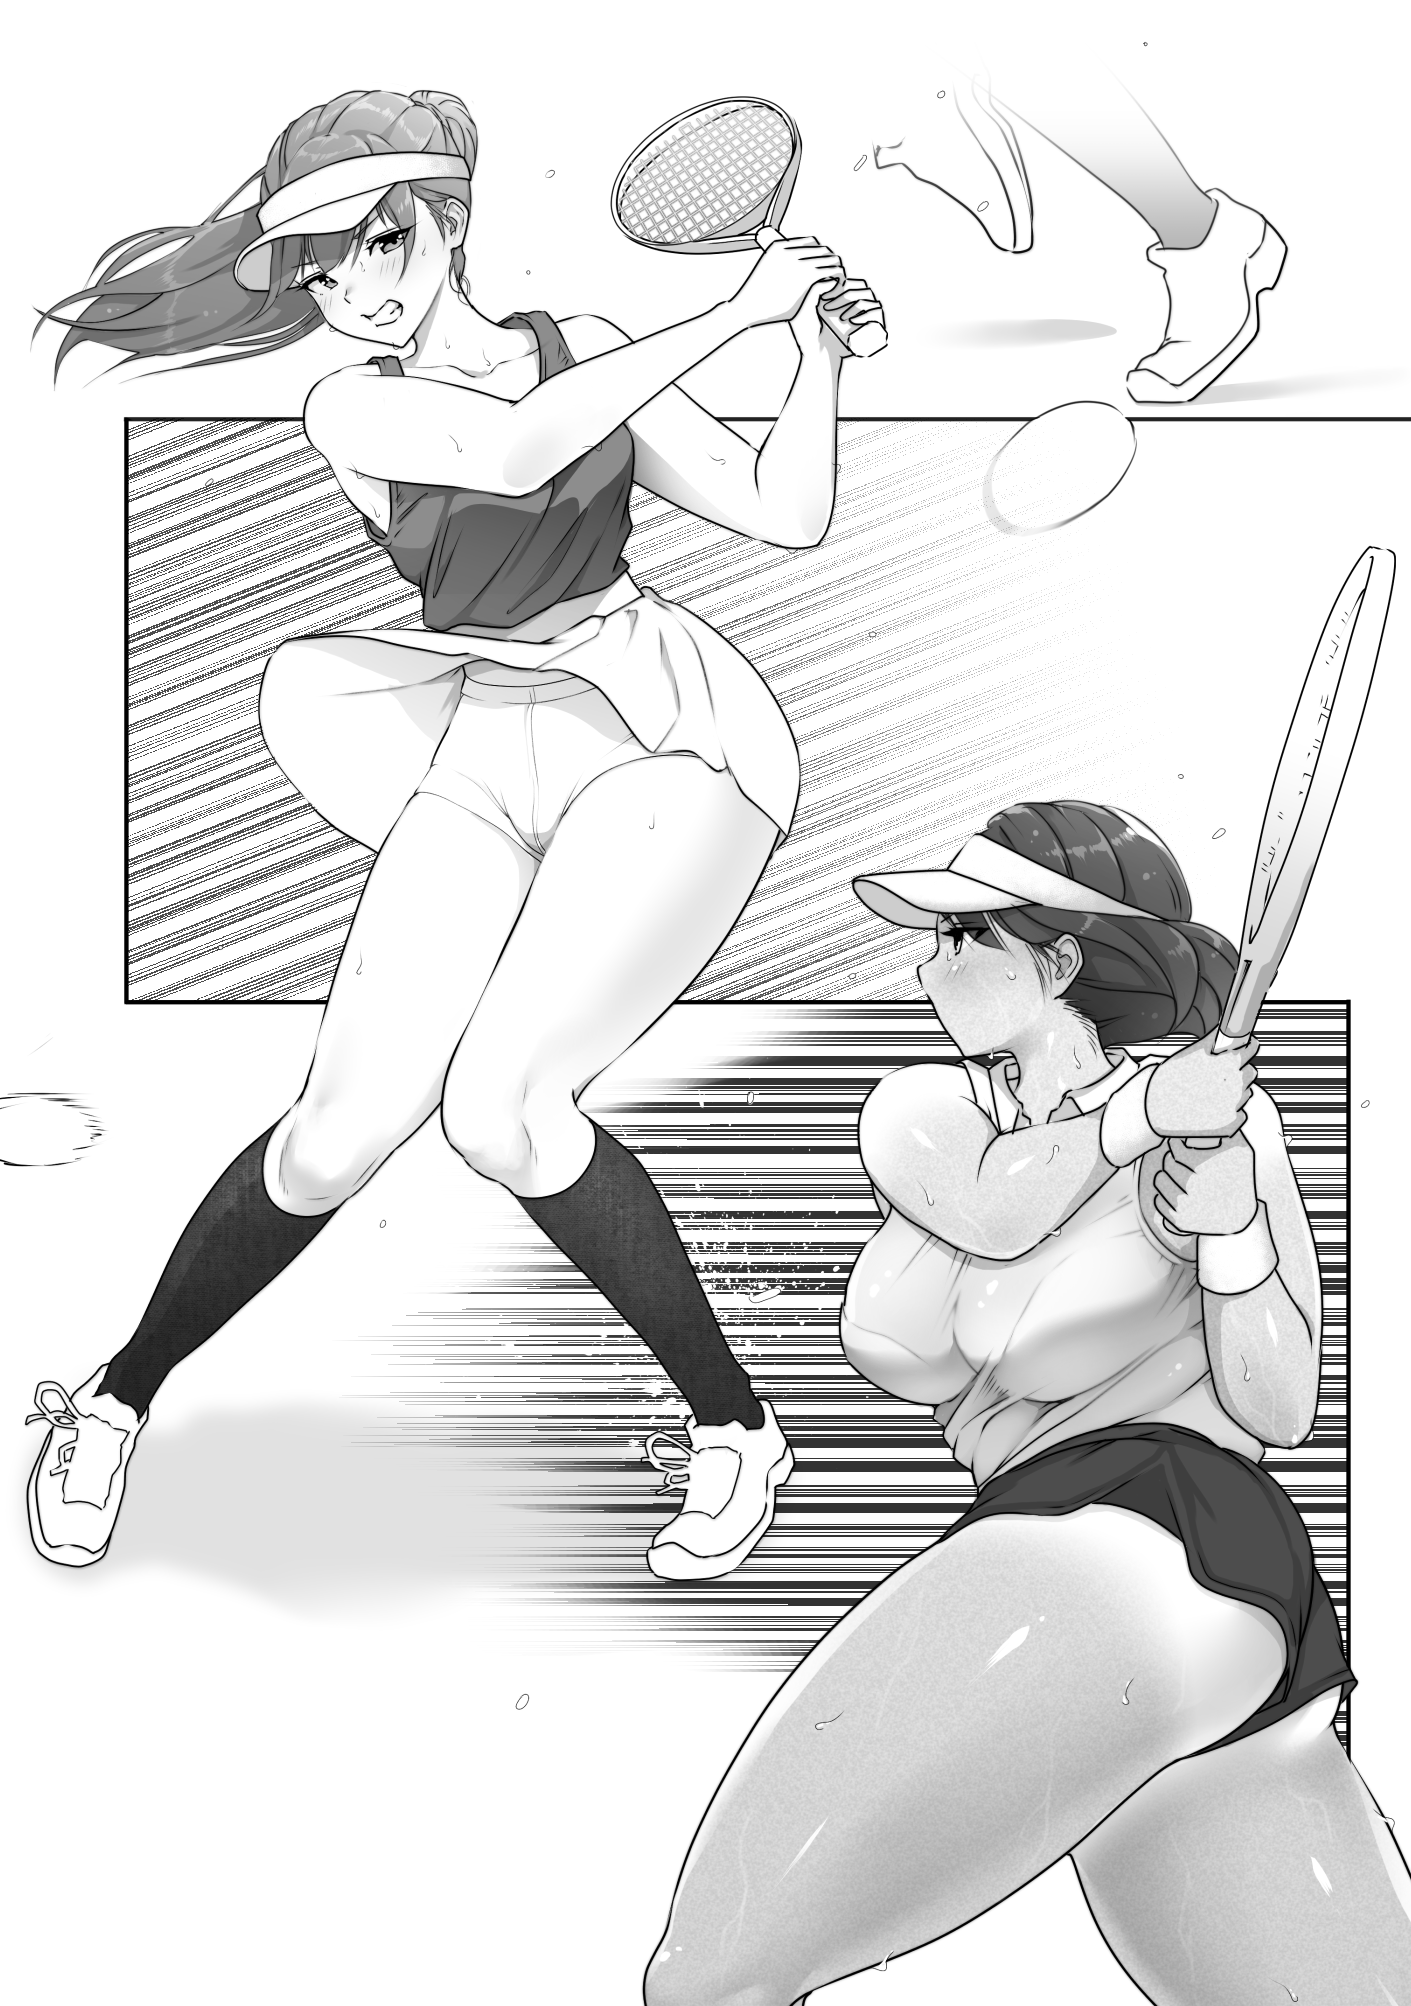 テニス部は野球部の手に堕ちました-5 【エロ漫画JK】野球部員達の性欲の餌食となったテニス部の巨乳ちゃんの運命が